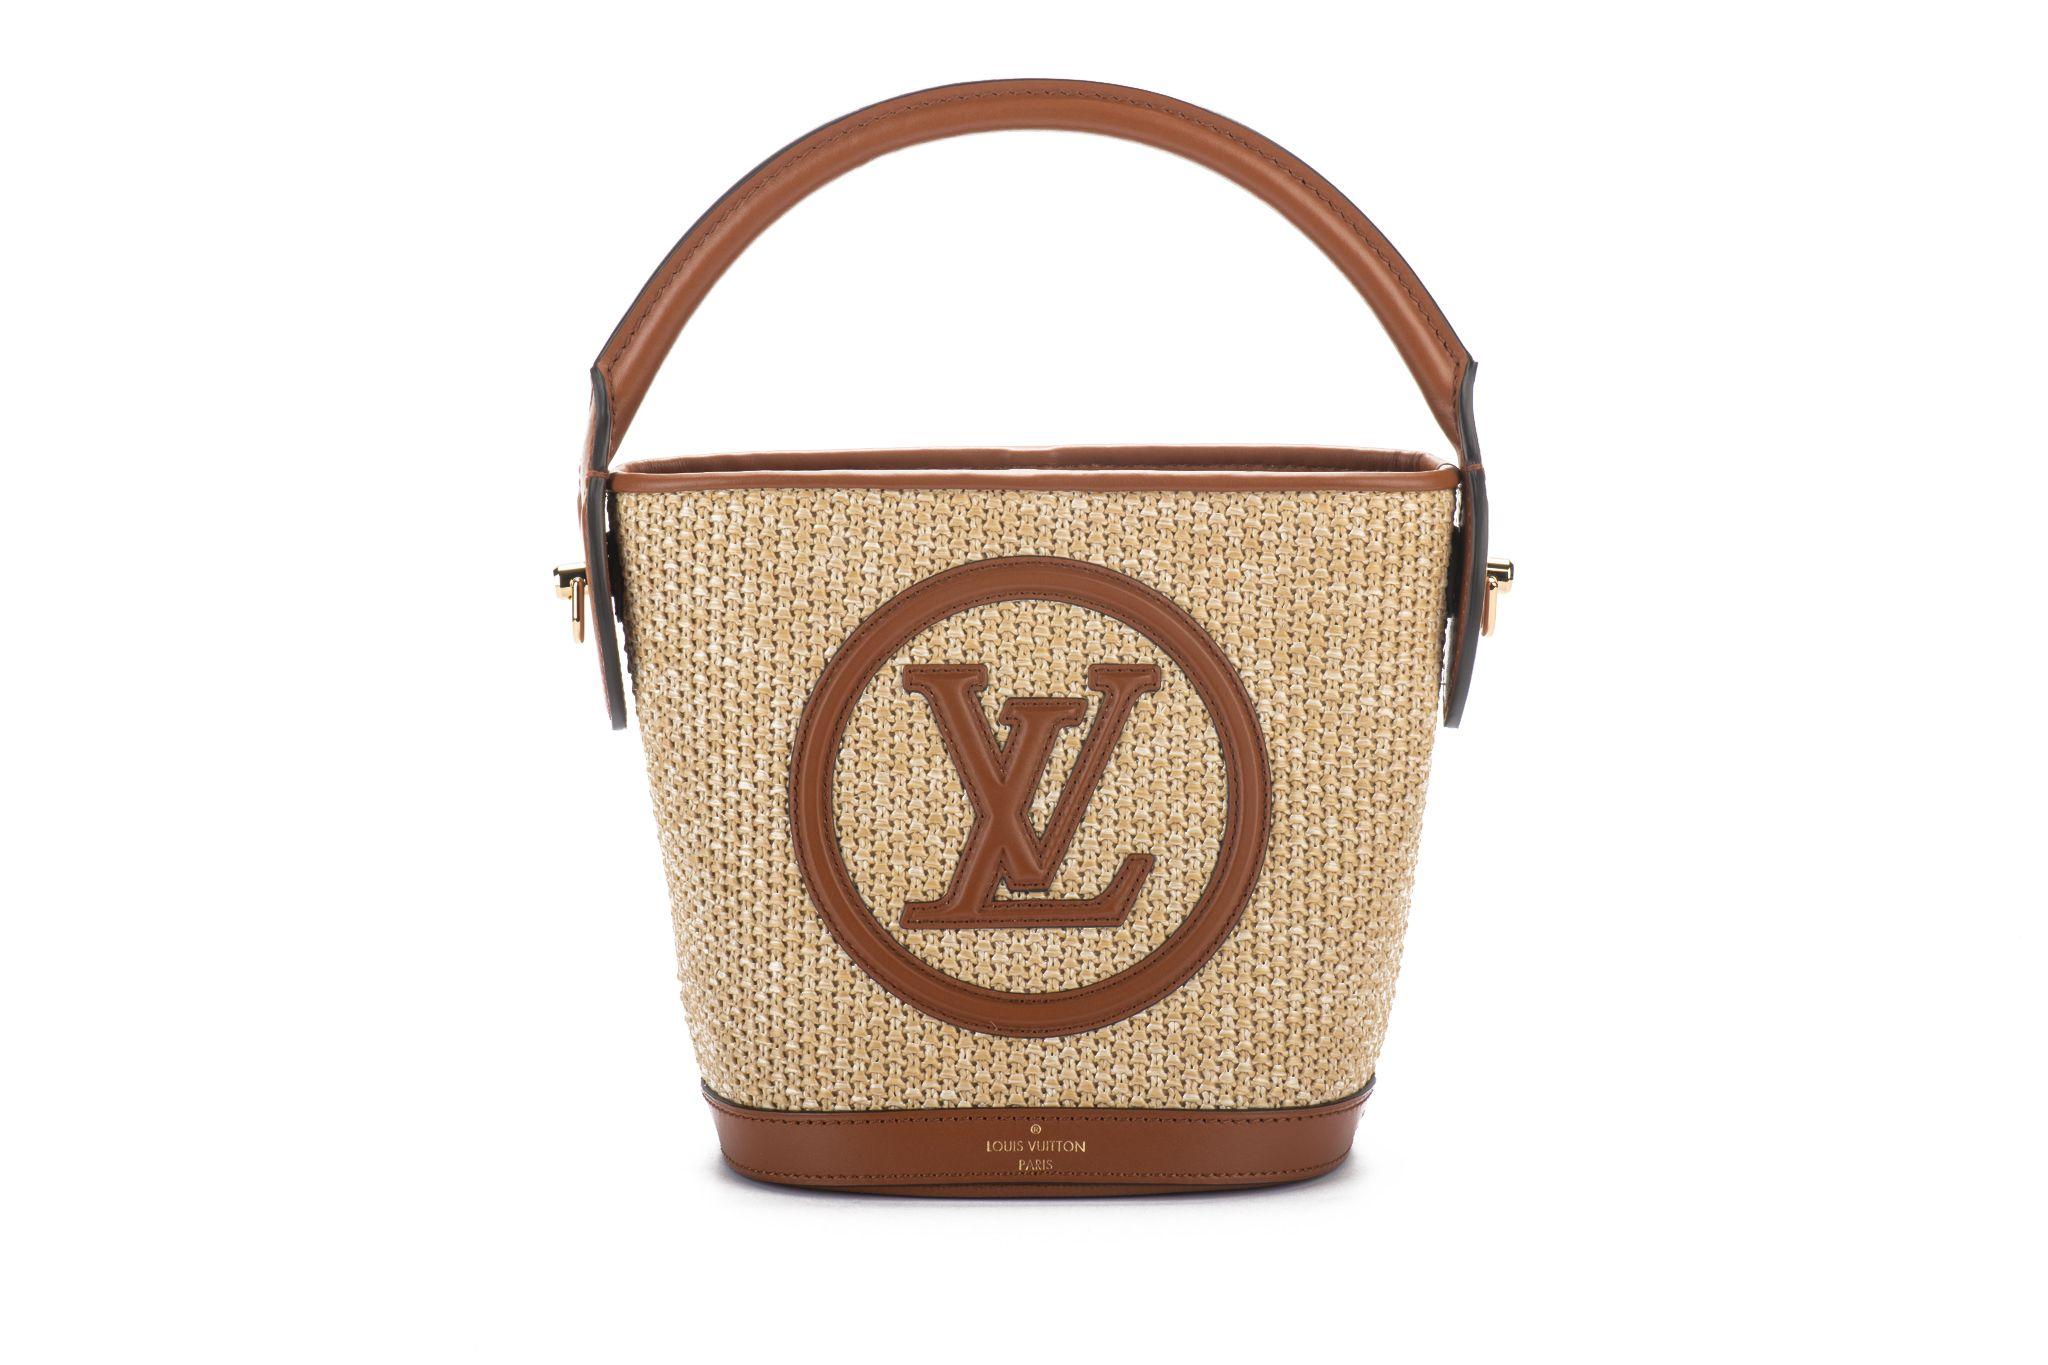 Louis Vuitton weltweit ausverkaufte Petit Bucket Tote. Tasche aus Raffia mit karamellfarbenem Lederbesatz. Griffhöhe 4,5